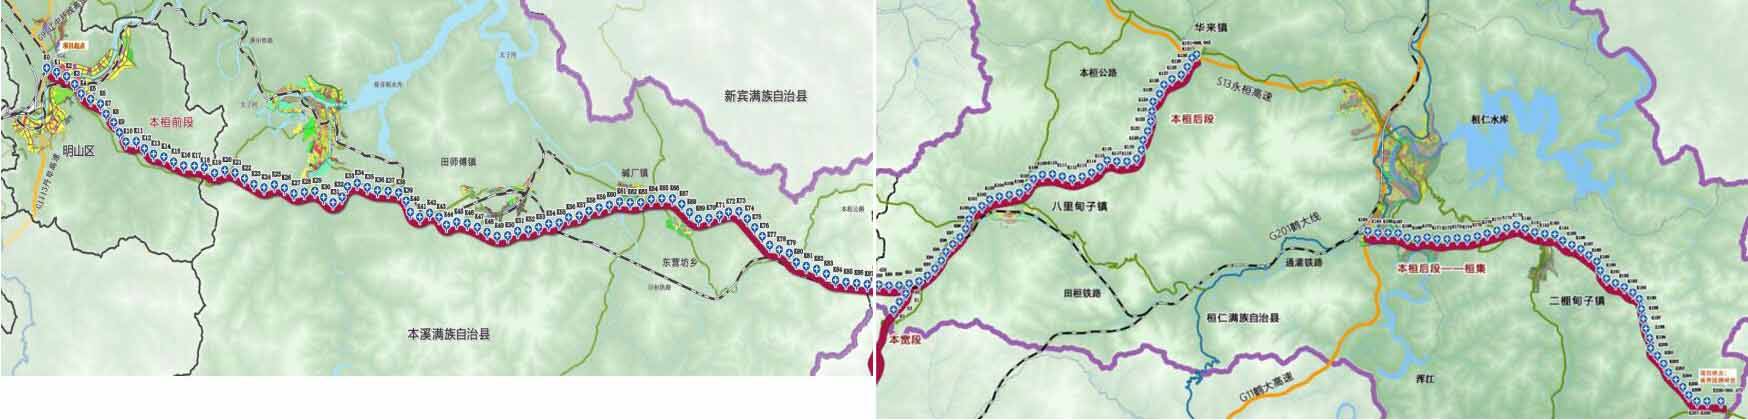 大部分路段是新建的,中间有一段是利用已建成的永桓高速,鹤大高速部分